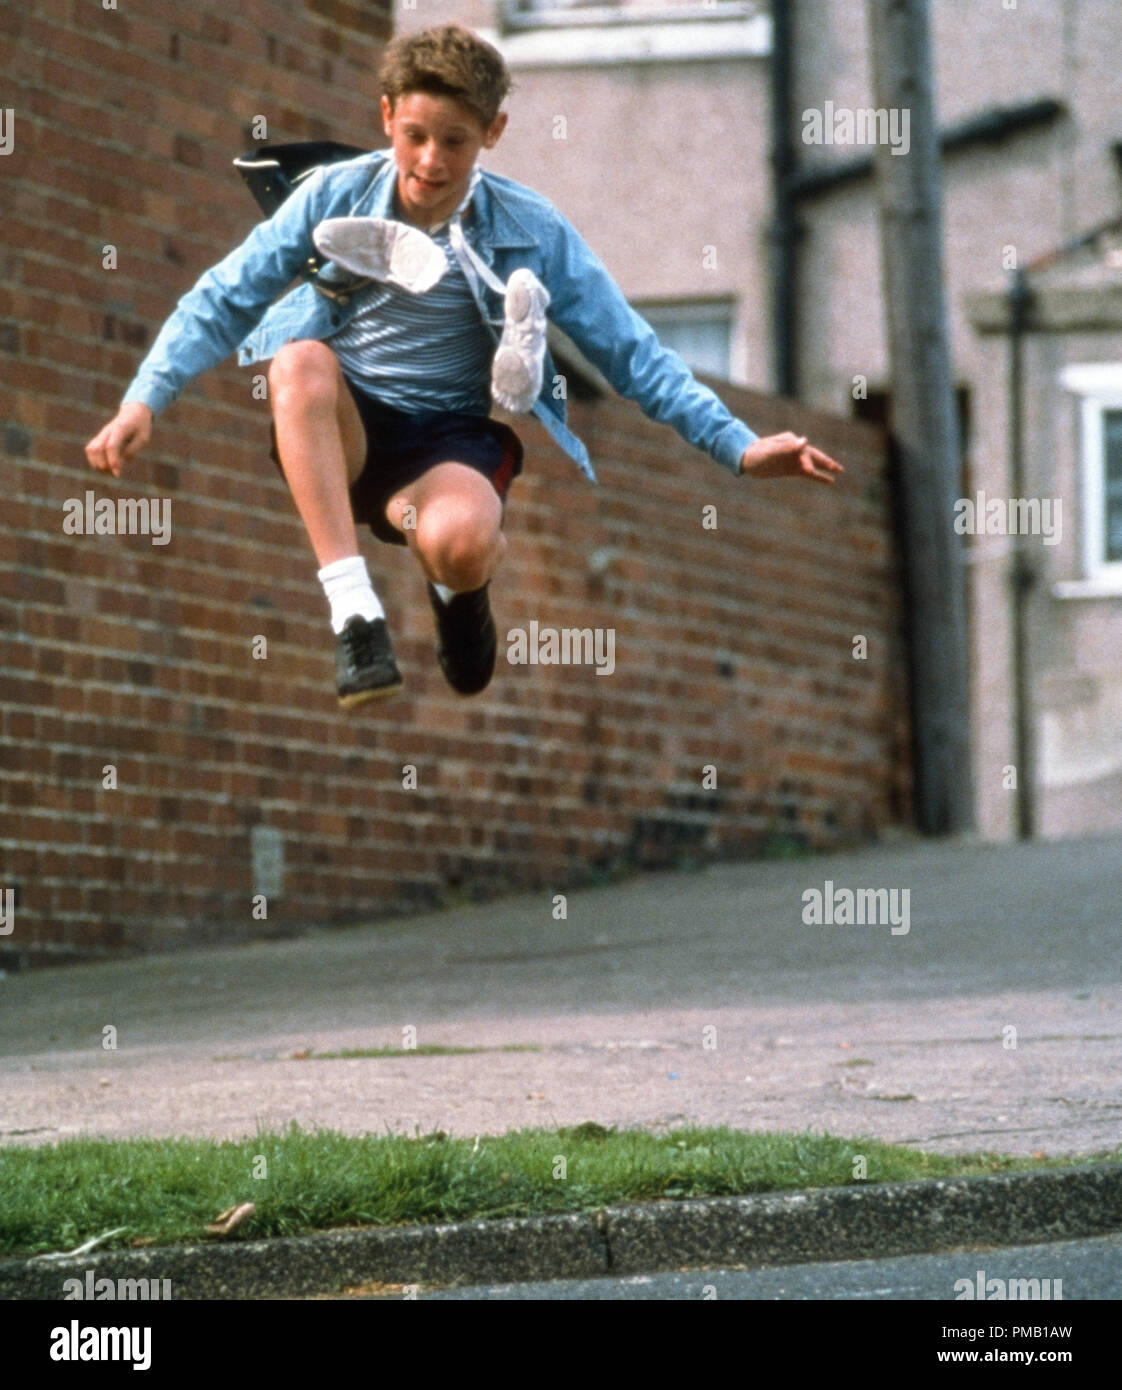 Jamie Bell, "Billy Elliot' (2000) File universale di riferimento # 33018 076 - PTO THA per solo uso editoriale - Tutti i diritti riservati Foto Stock